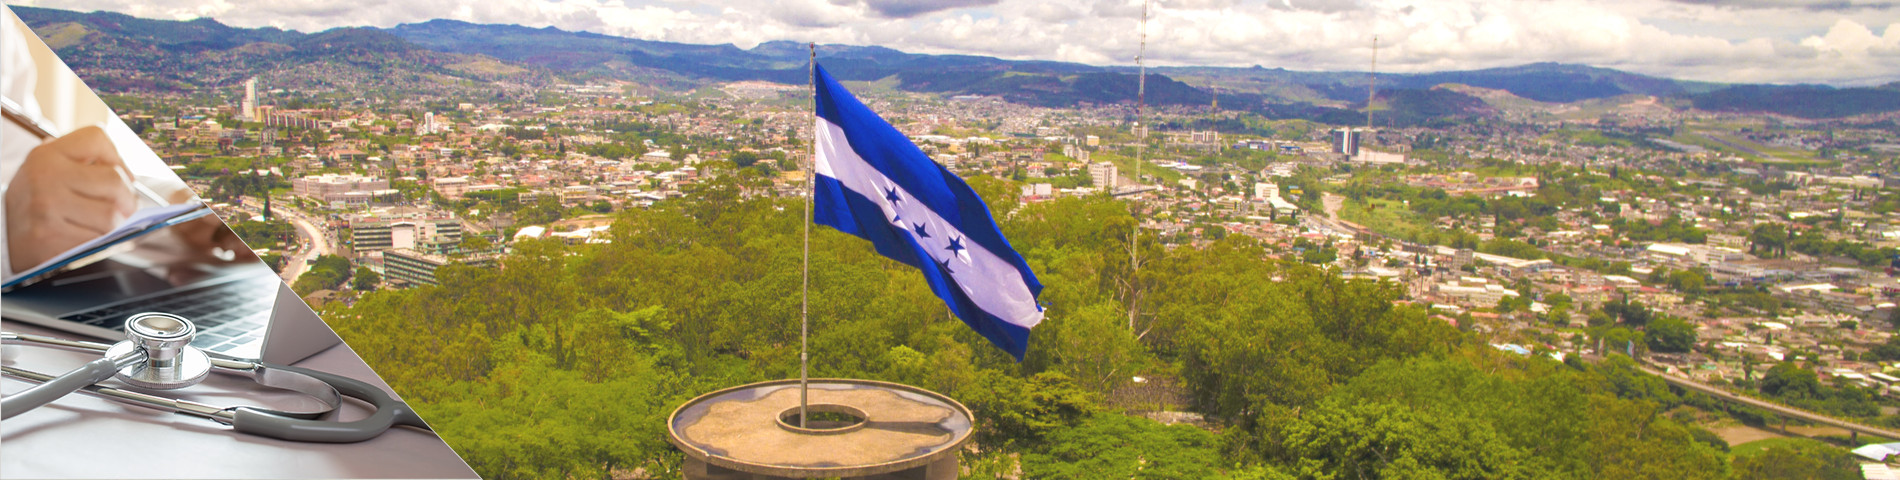 Honduras - Španielčina pre doktorov a sestry